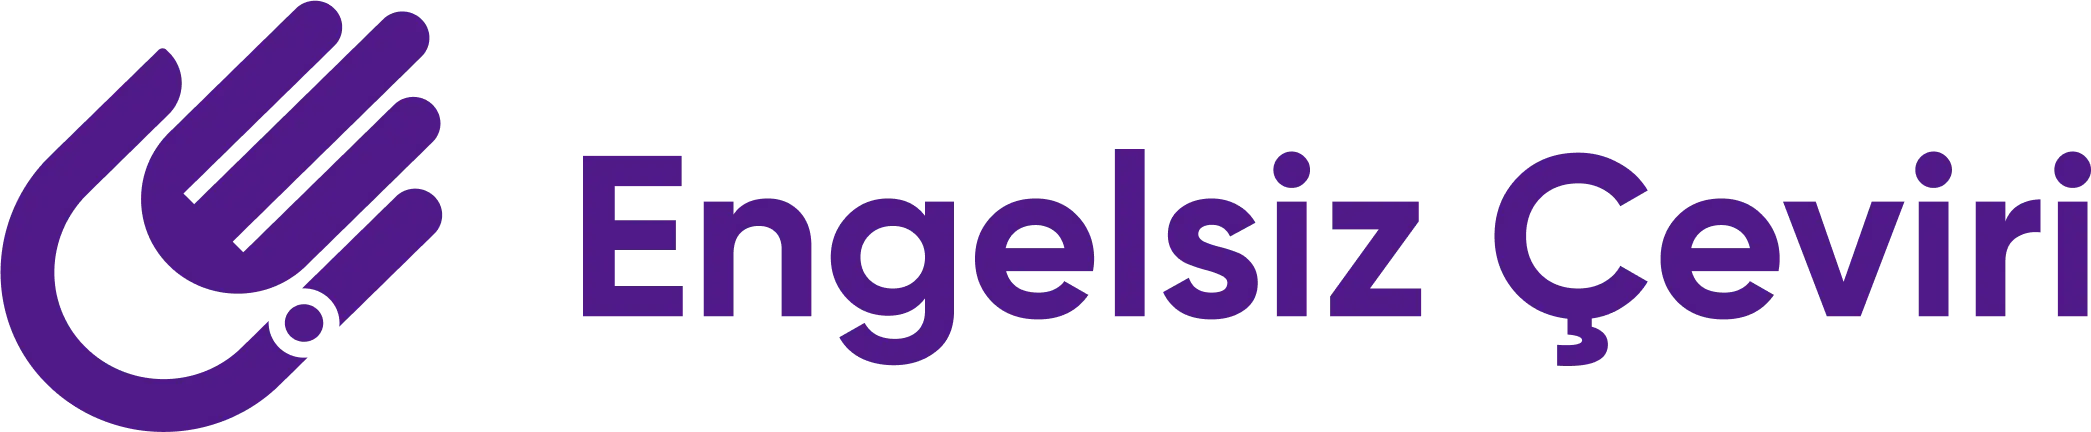 Engelsiz Çeviri logo